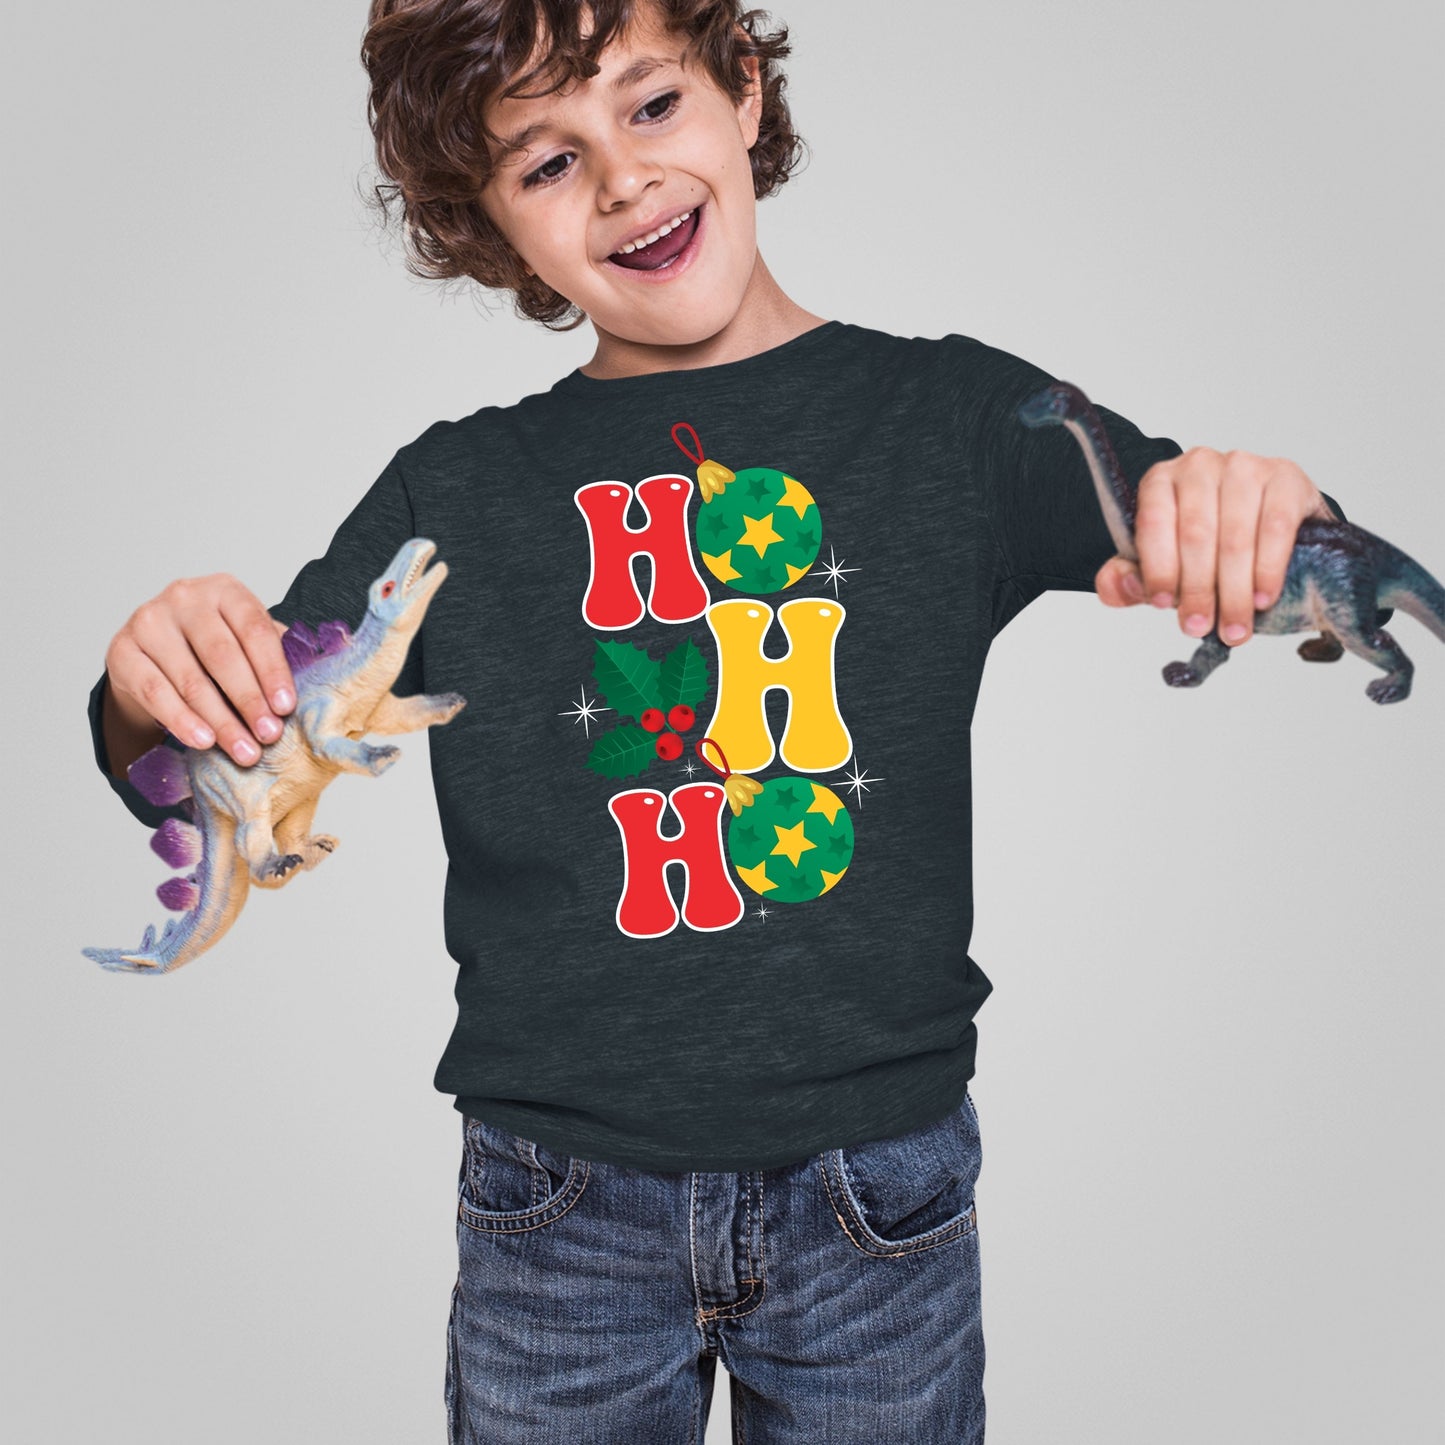 Ho Ho Ho, Christmas Sweatshirt, Christmas Long Sleeves, Christmas Sweater, Christmas Crewneck For Toddler, Christmas Present